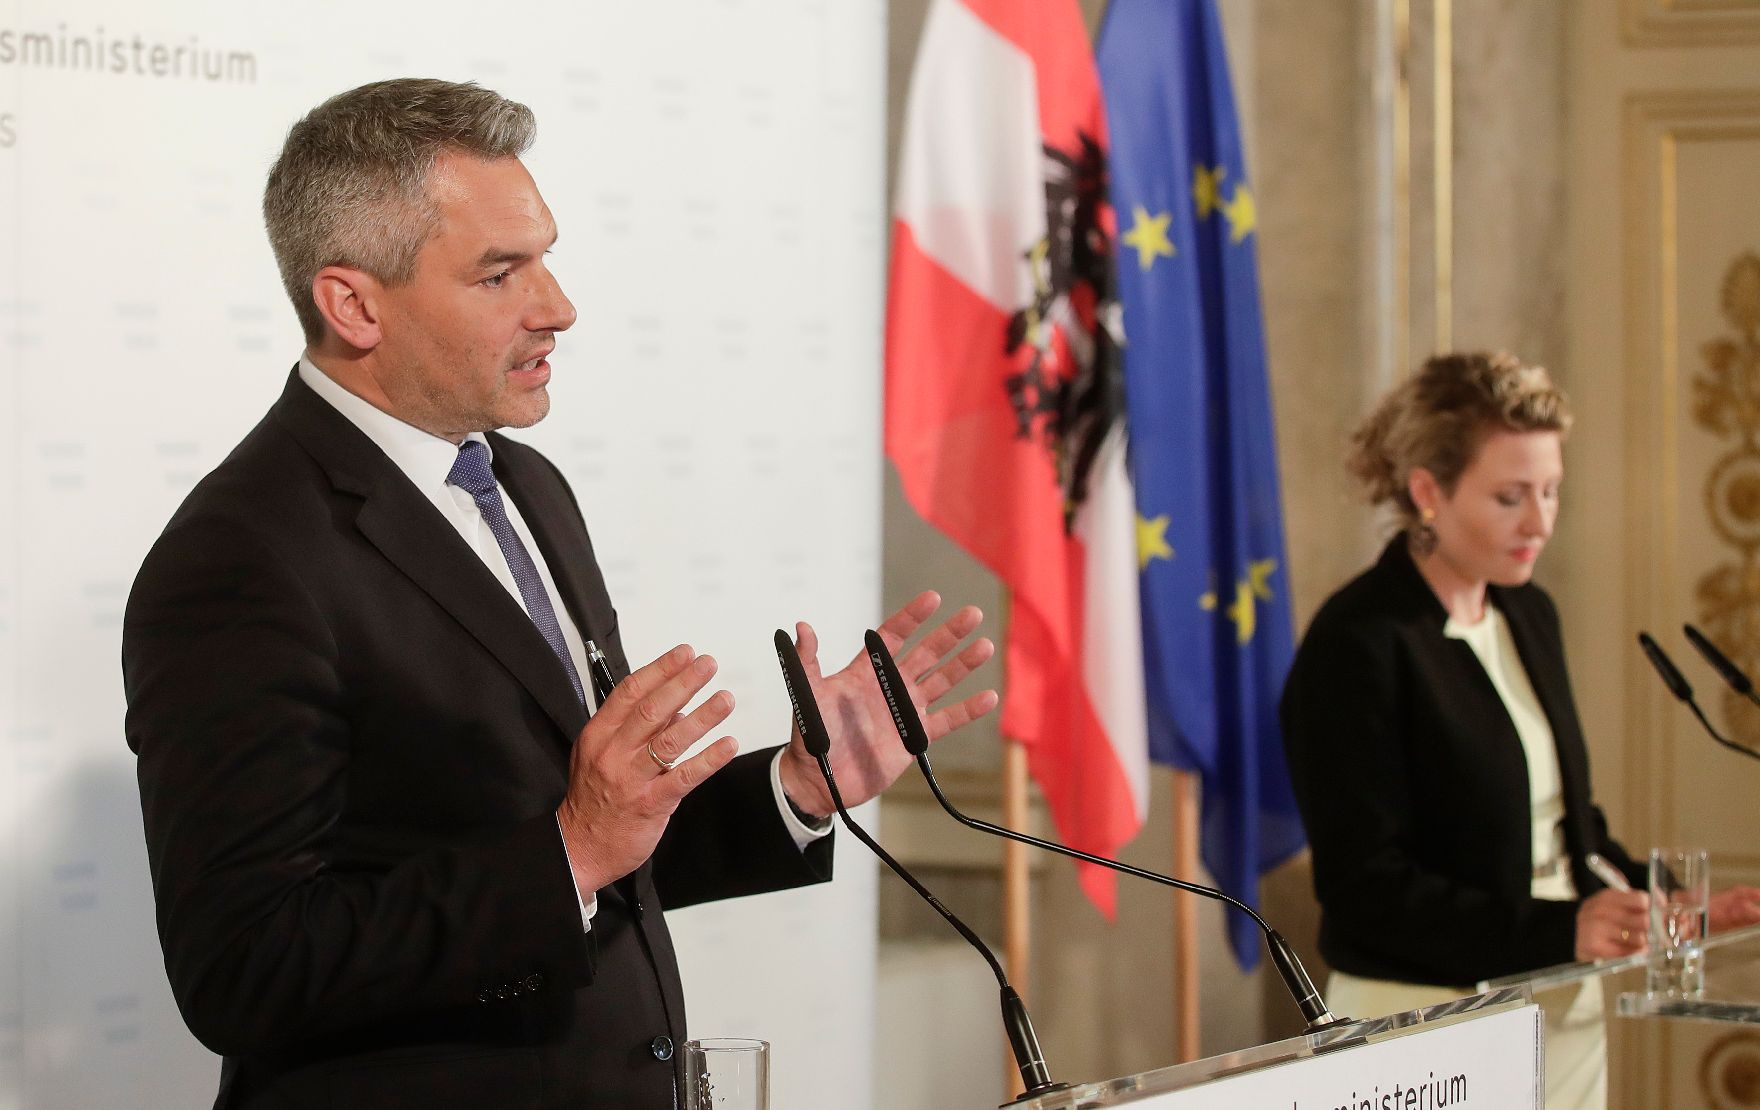 Am 8. Juli 2020 gaben Bundesministerin Susanne Raab (r.) und Bundesminister Karl Nehammer (l.) eine Pressekonferenz zum Thema "Radikalisierung".